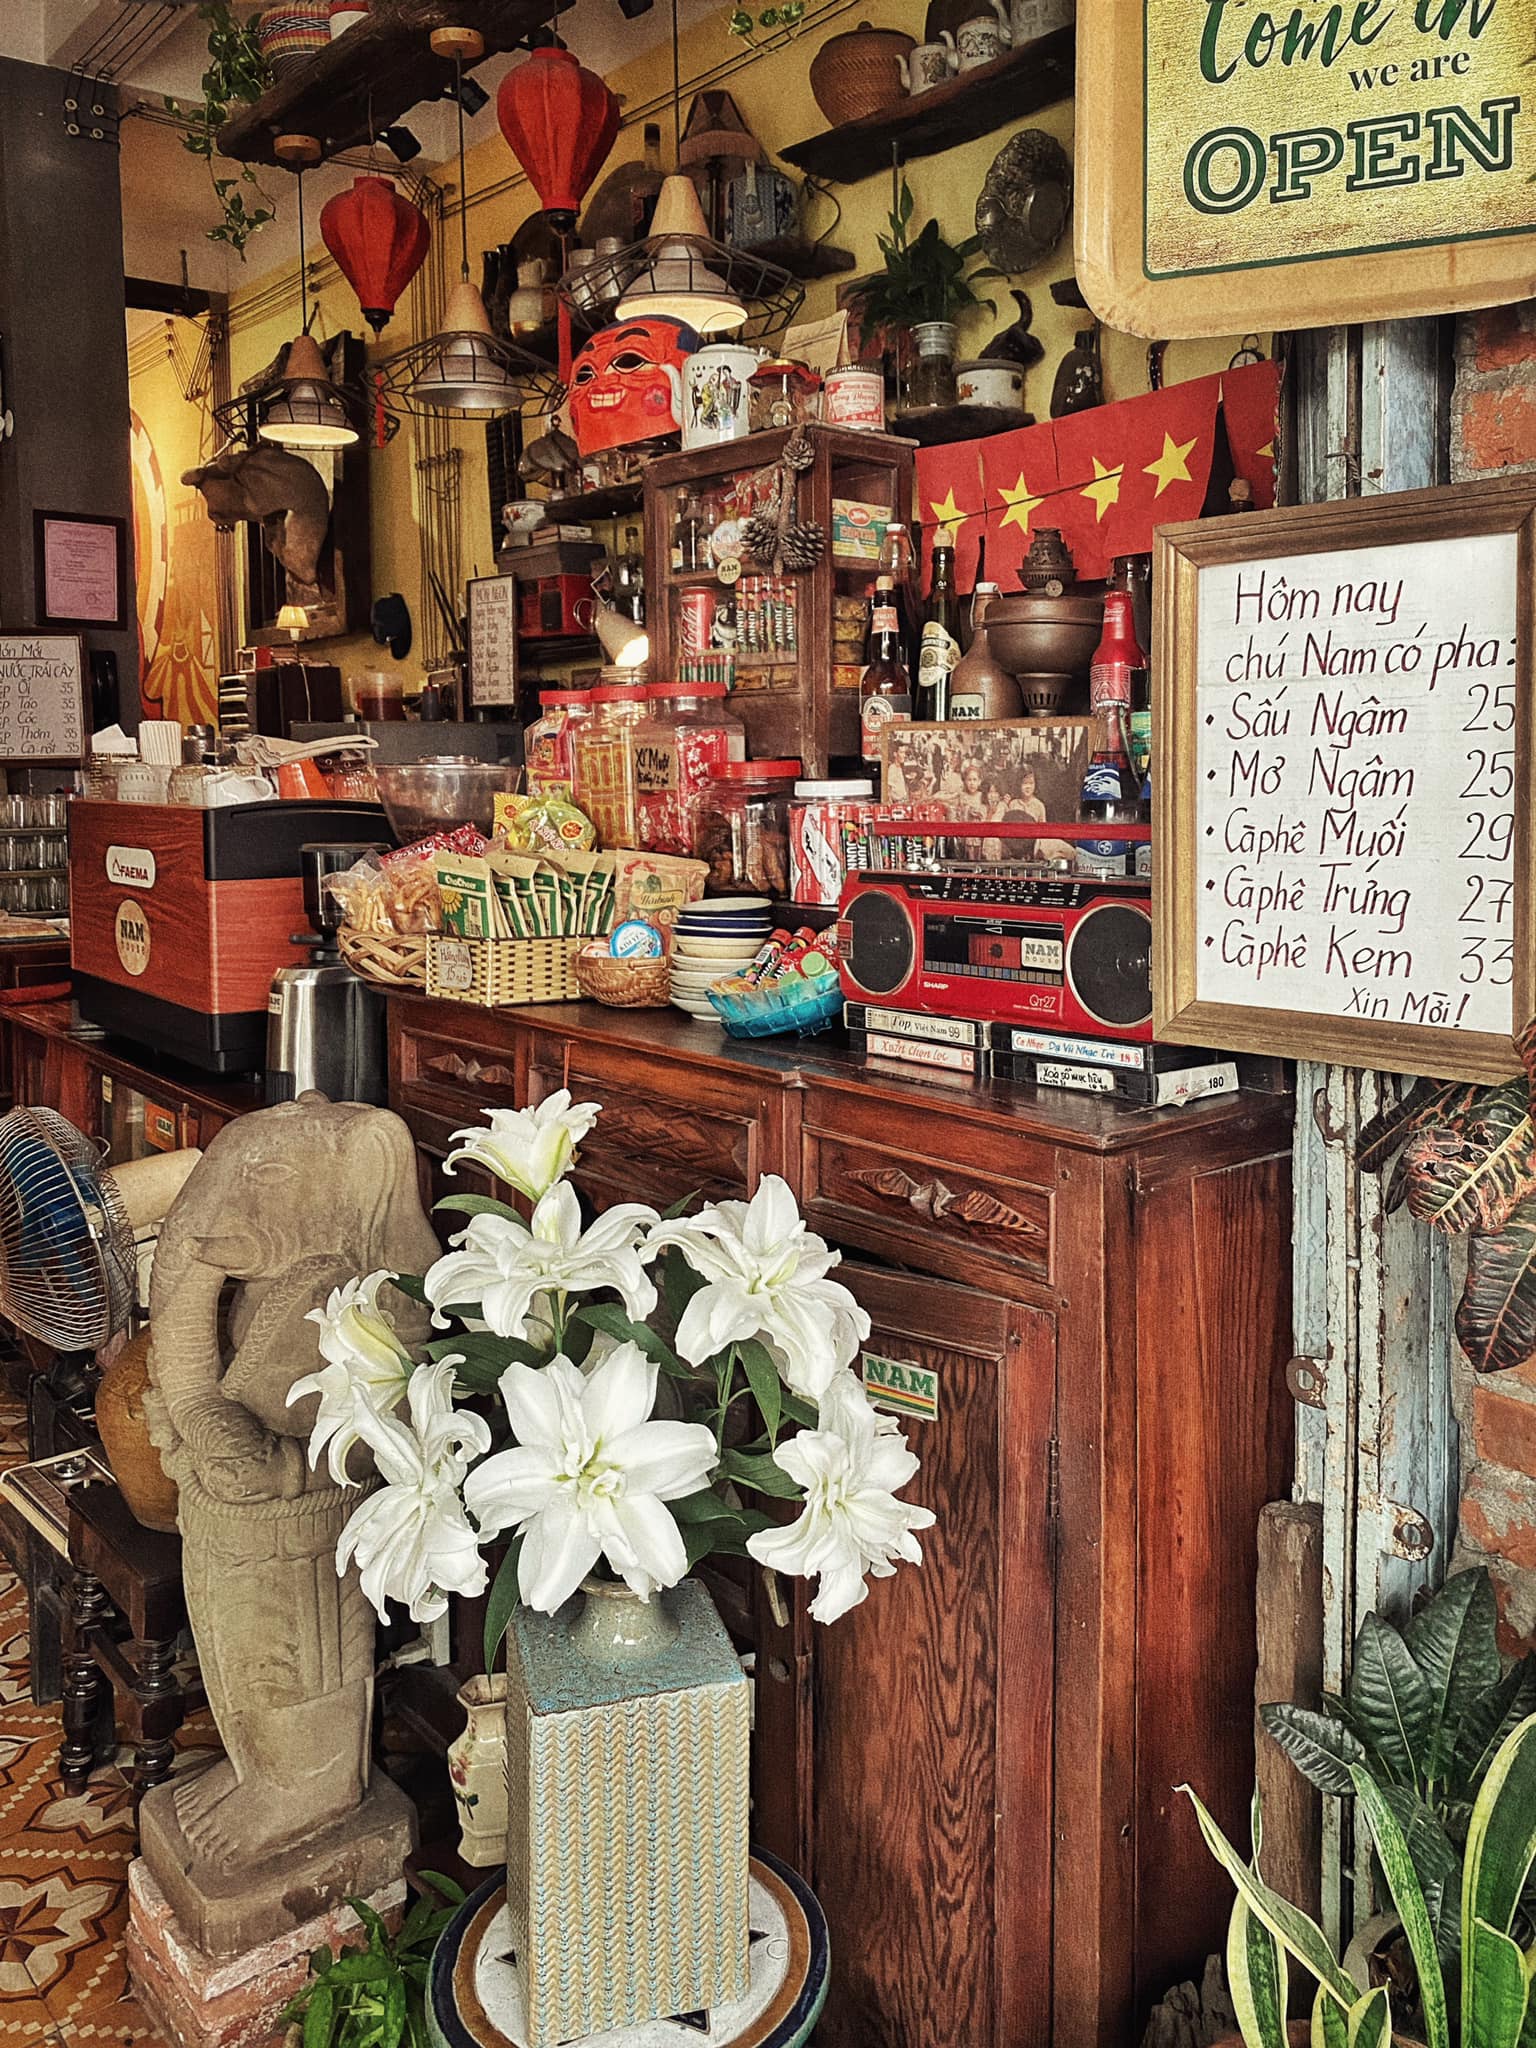 Đà Nẵng luôn là điểm đến hoàn hảo cho những ai yêu thích cà phê. Hãy trải nghiệm không gian đặc biệt với những quán cafe sáng tạo tại thành phố này. Hình ảnh sẽ giúp bạn tìm kiếm được quán cafe ưng ý nhất.